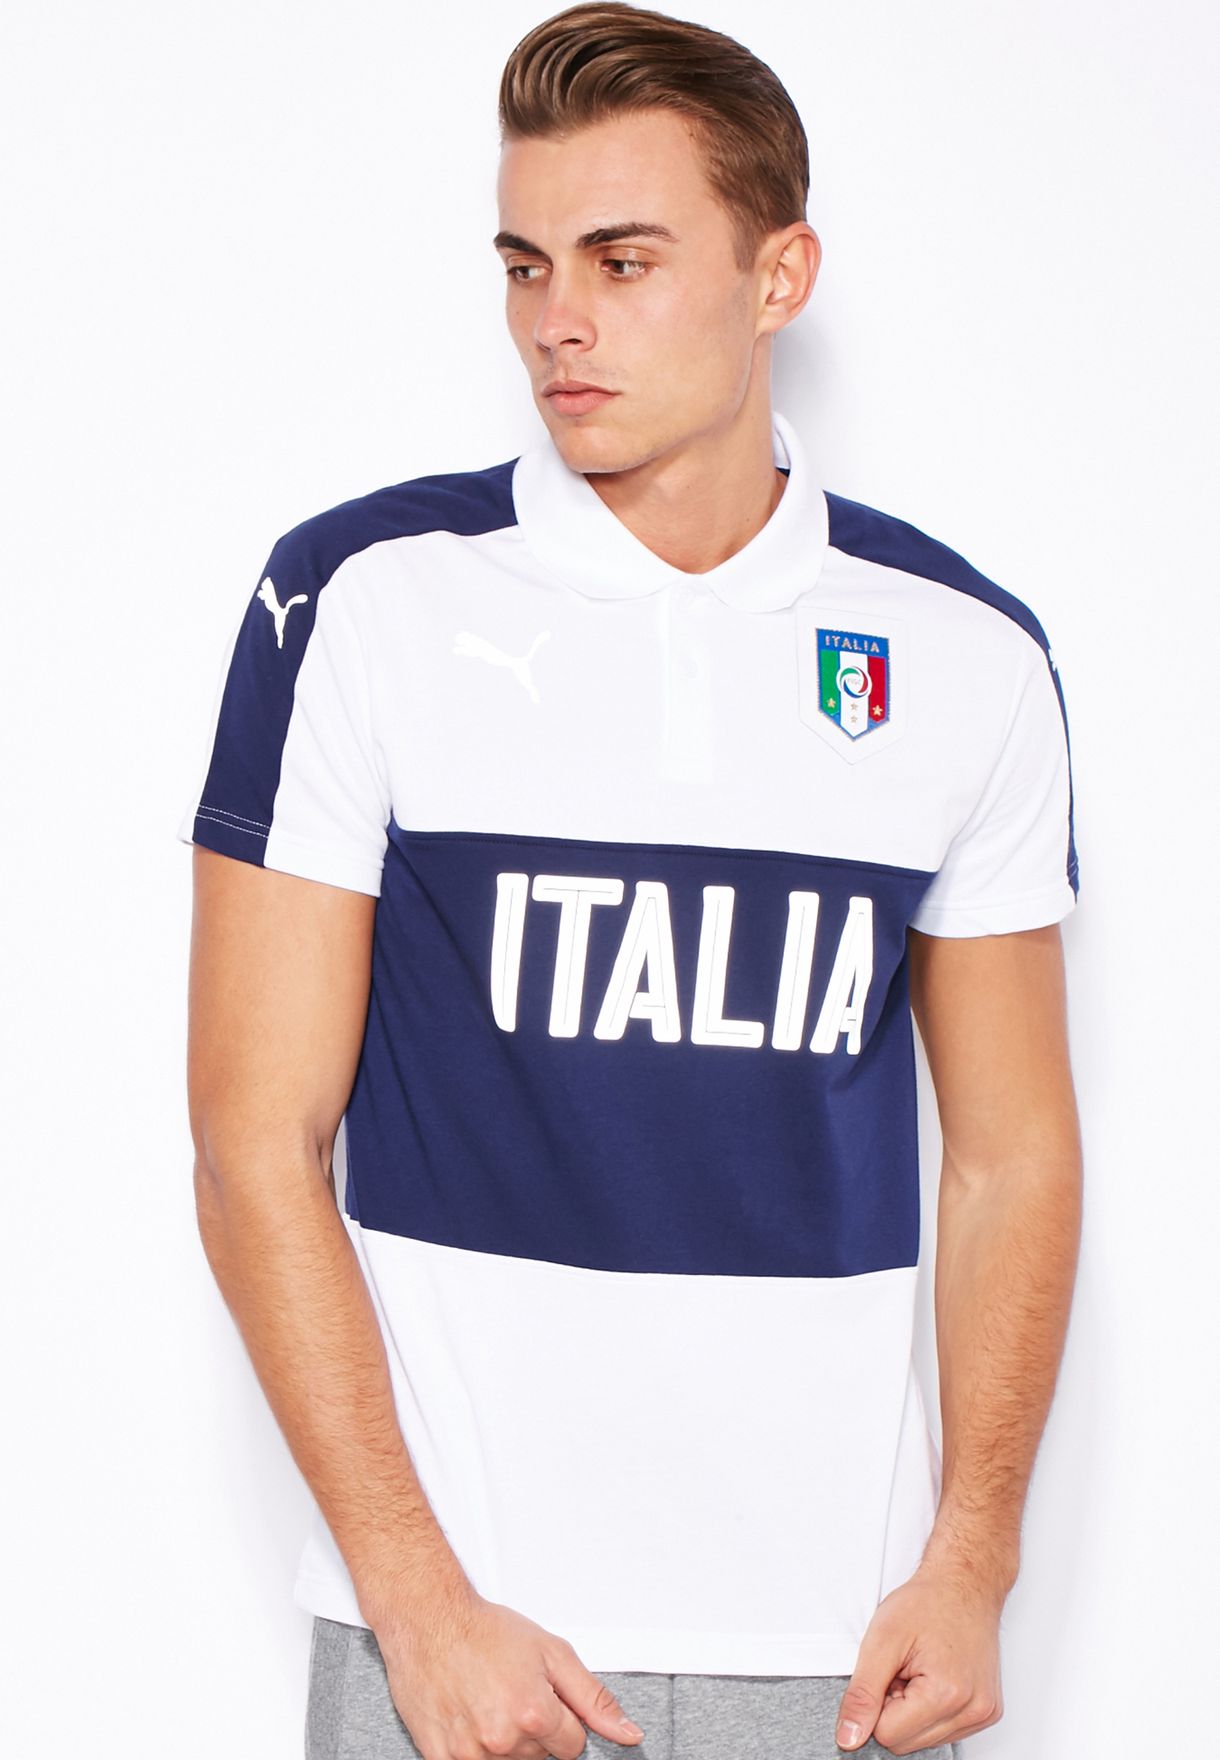 puma italia polo shirt